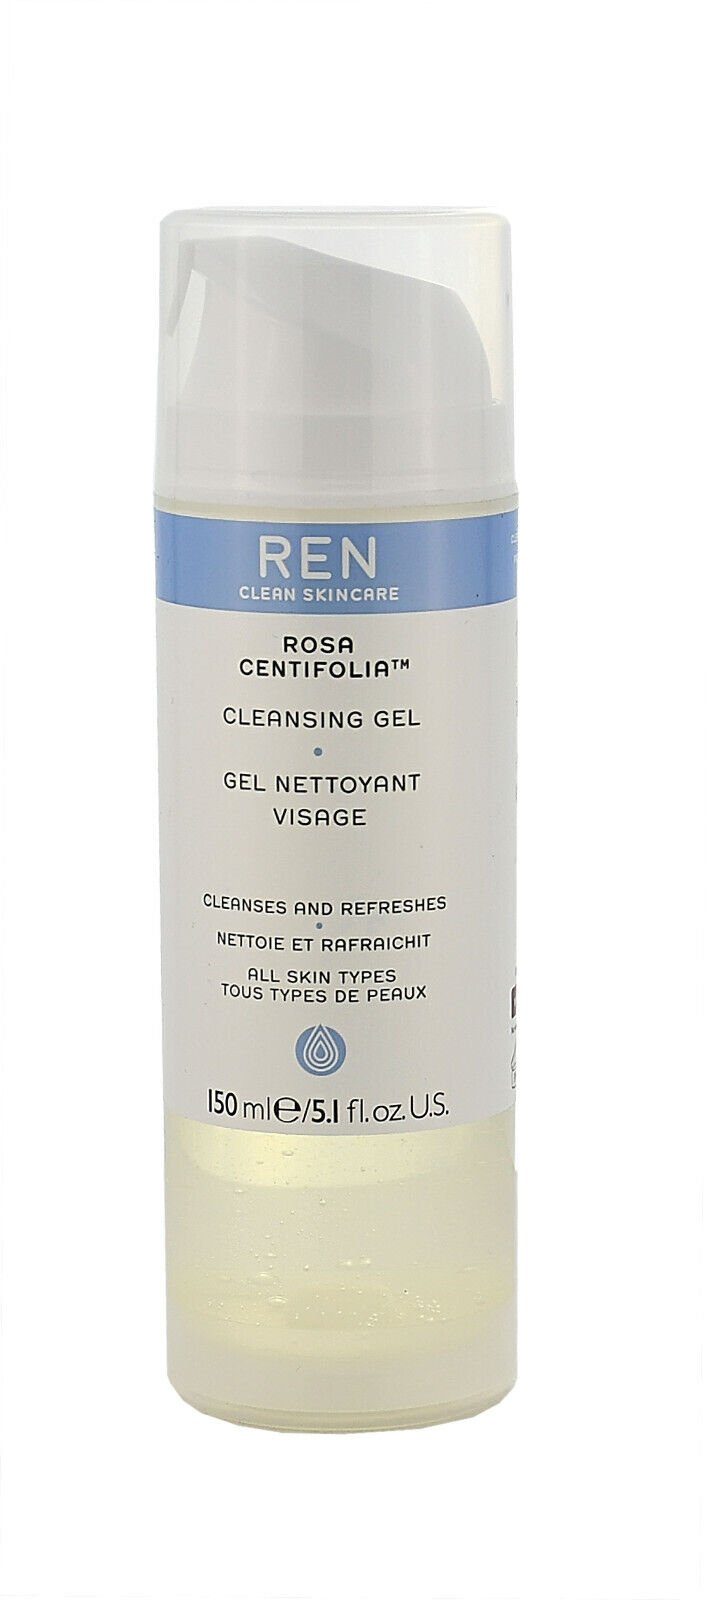 REN Clean Skincare Gesichtsreinigungsgel REN Rosa Centifolia Cleansing Gel - 150ml